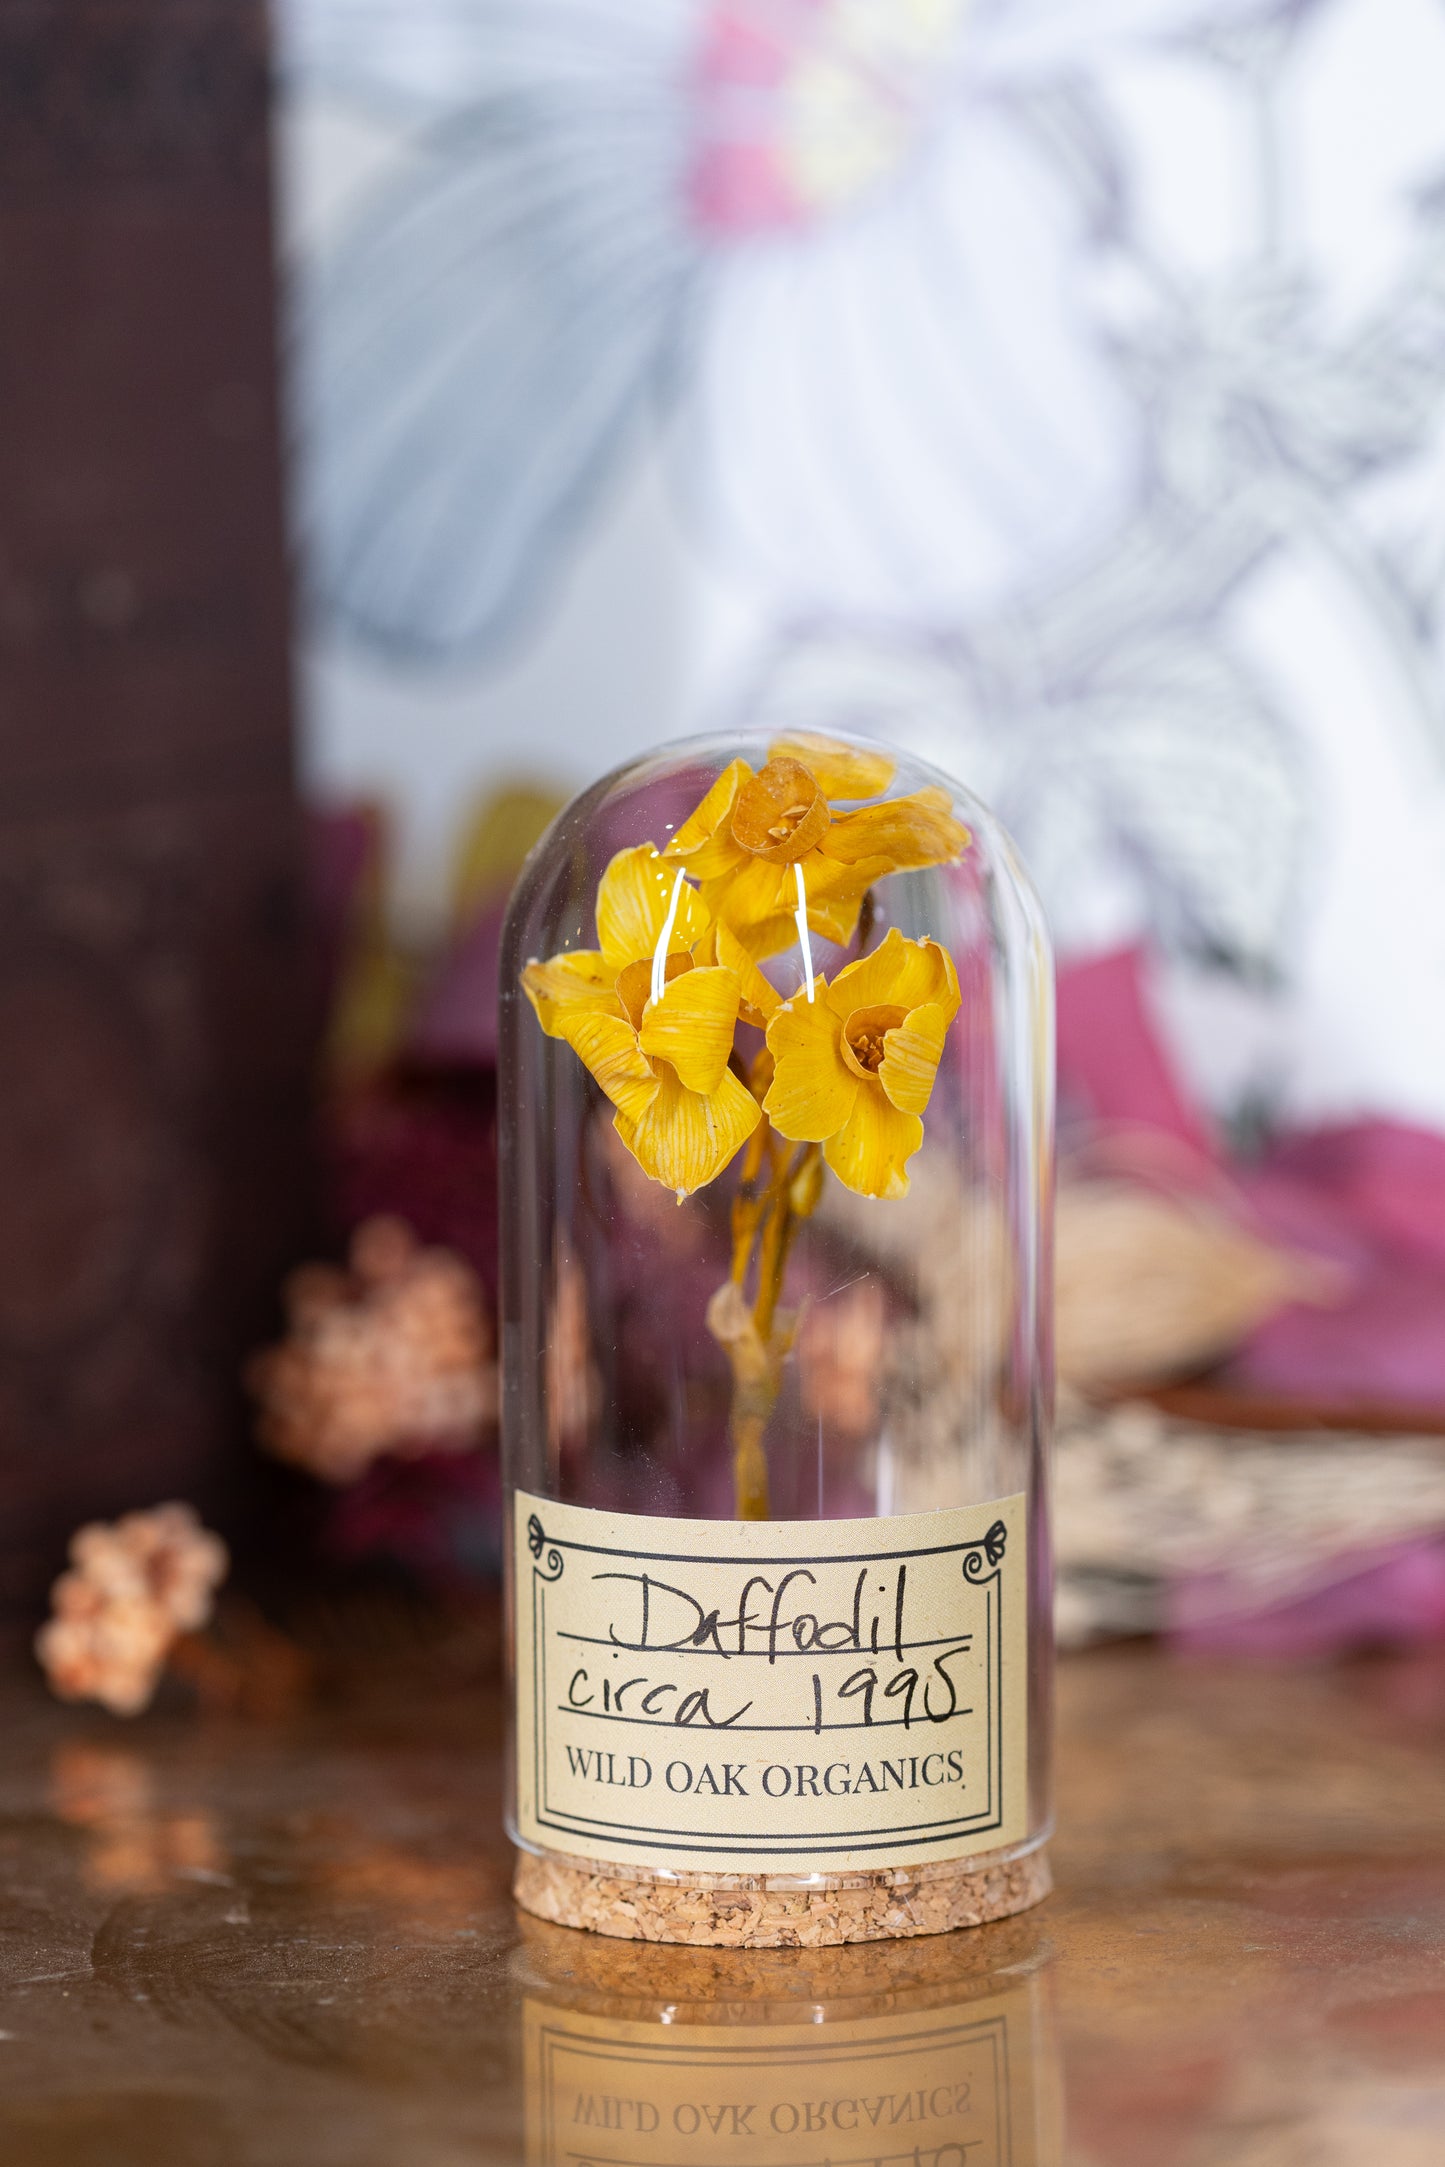 1991 / 1995 Daffodil CLOCHE